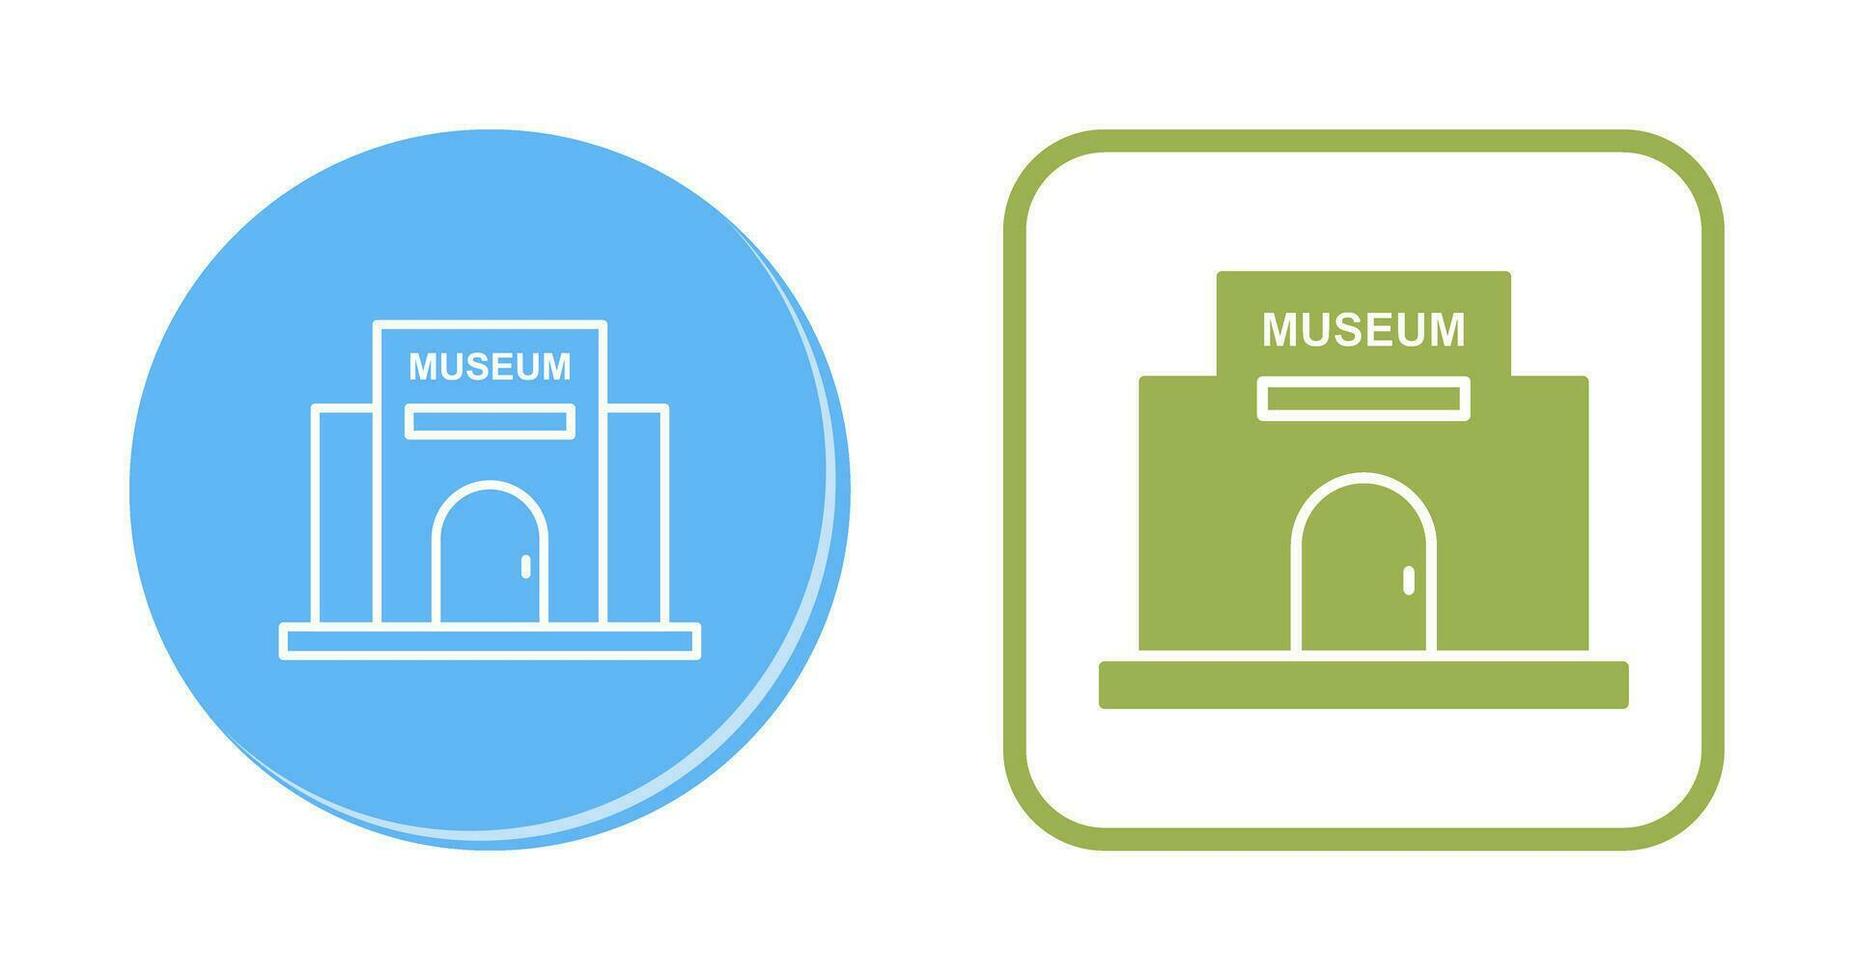 Museum Building Vector Icon